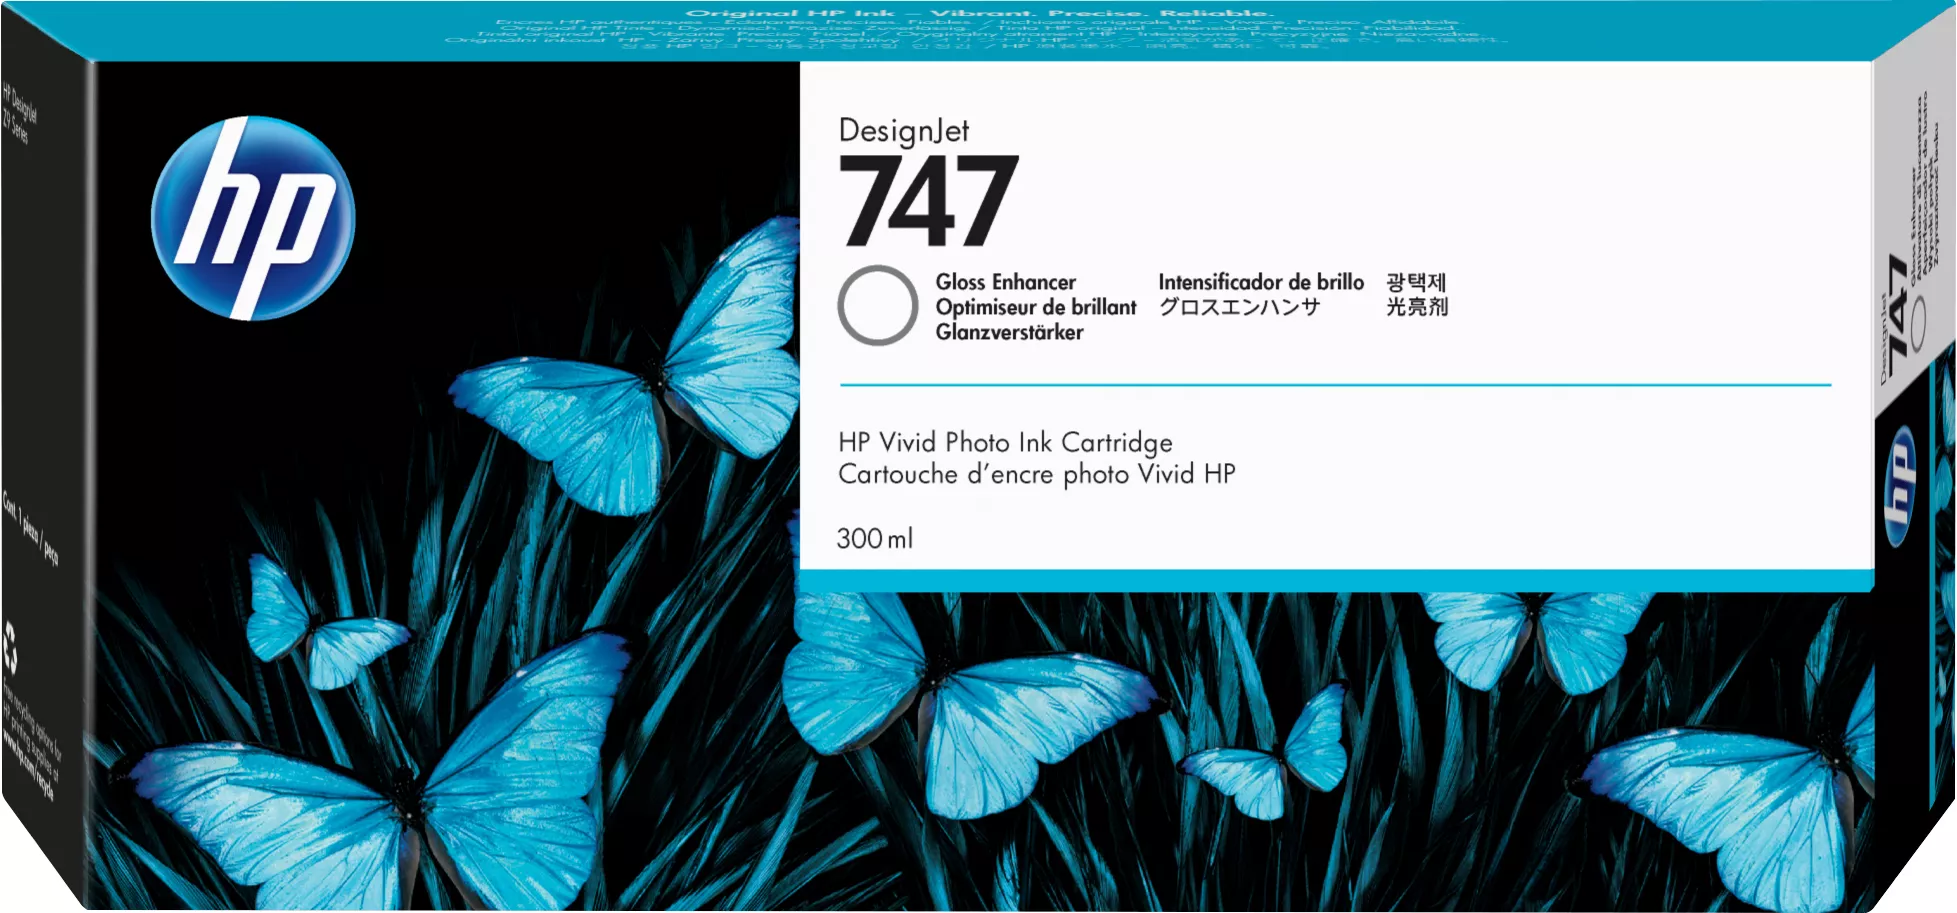 Achat HP 747 300-ml Gloss Enhancer Cartridge au meilleur prix